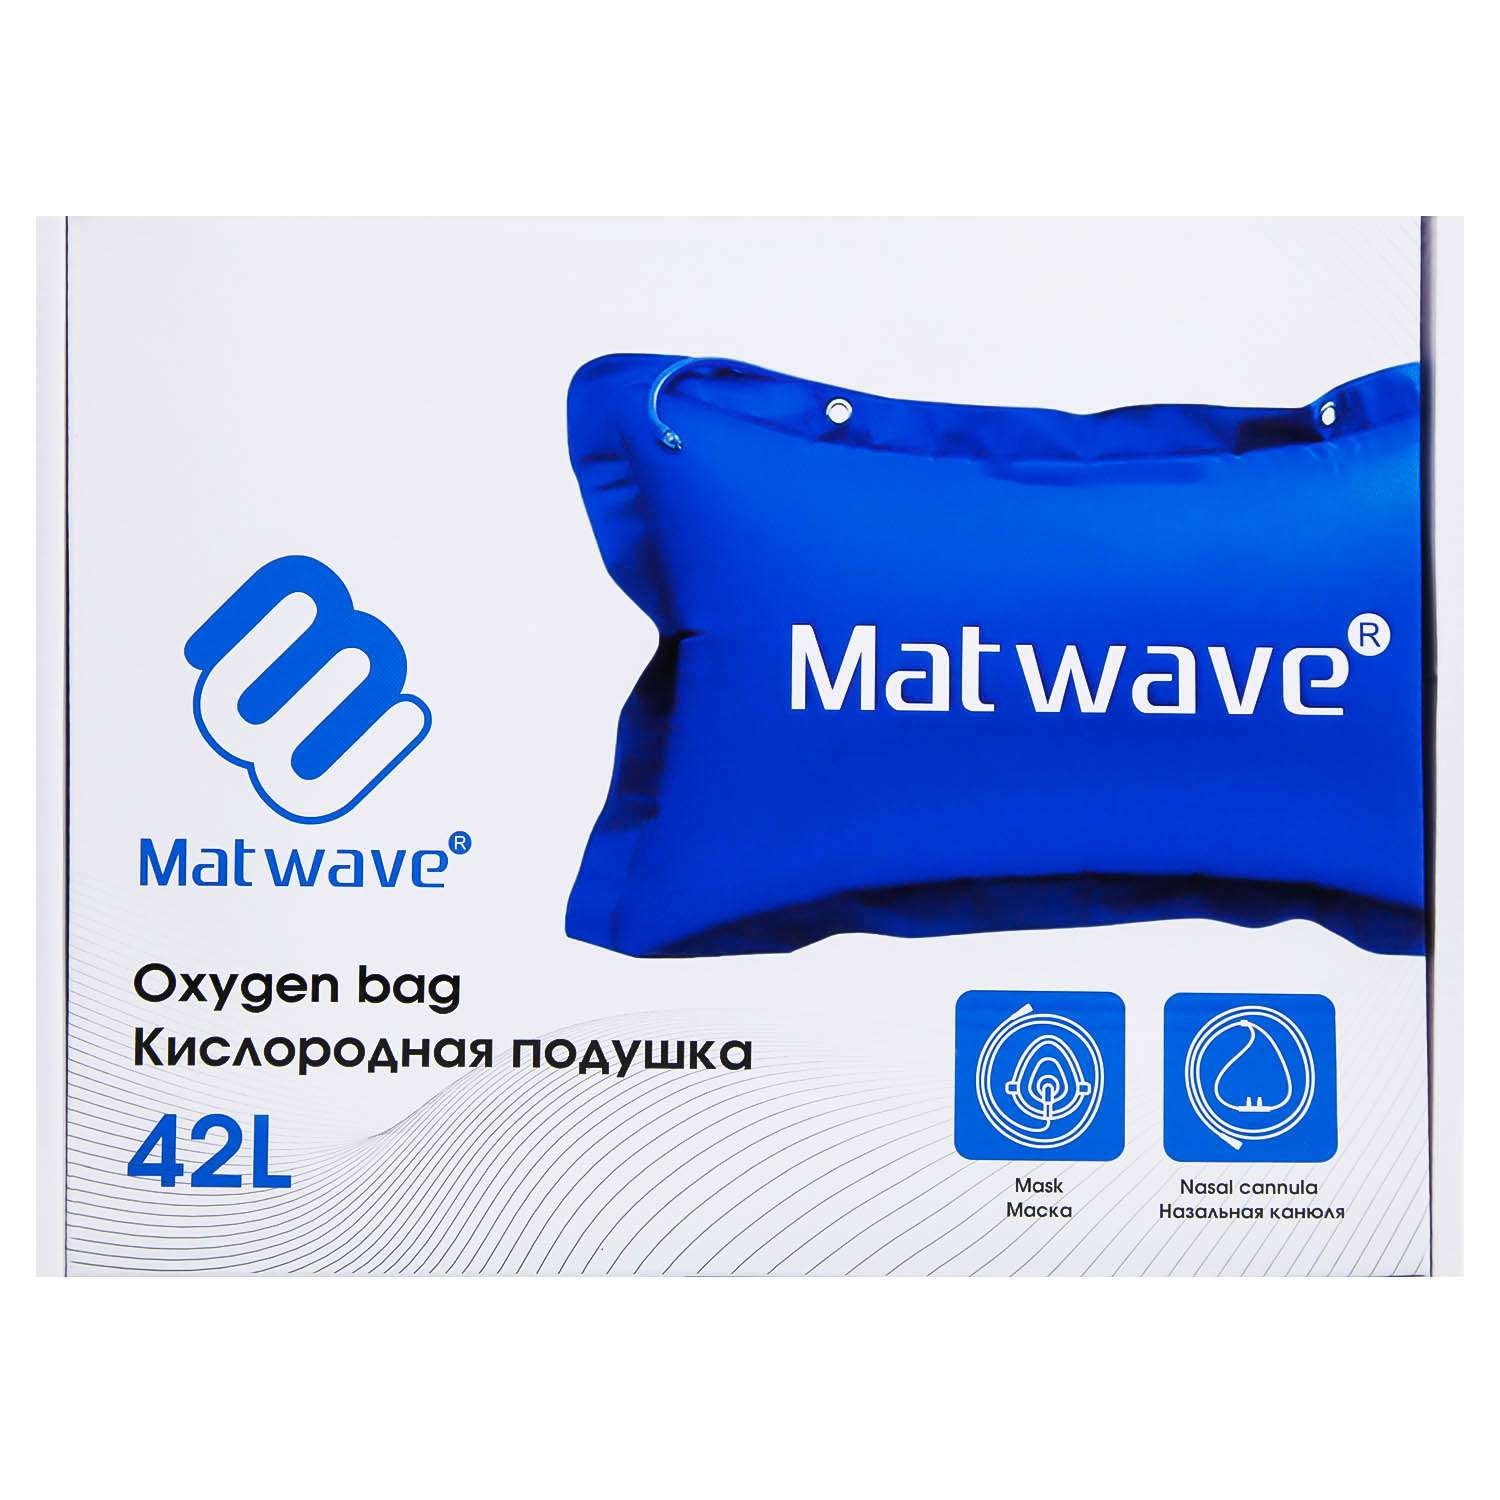 Кислородная подушка Matwave 42L + 2 маски + назальная канюля - фото 11